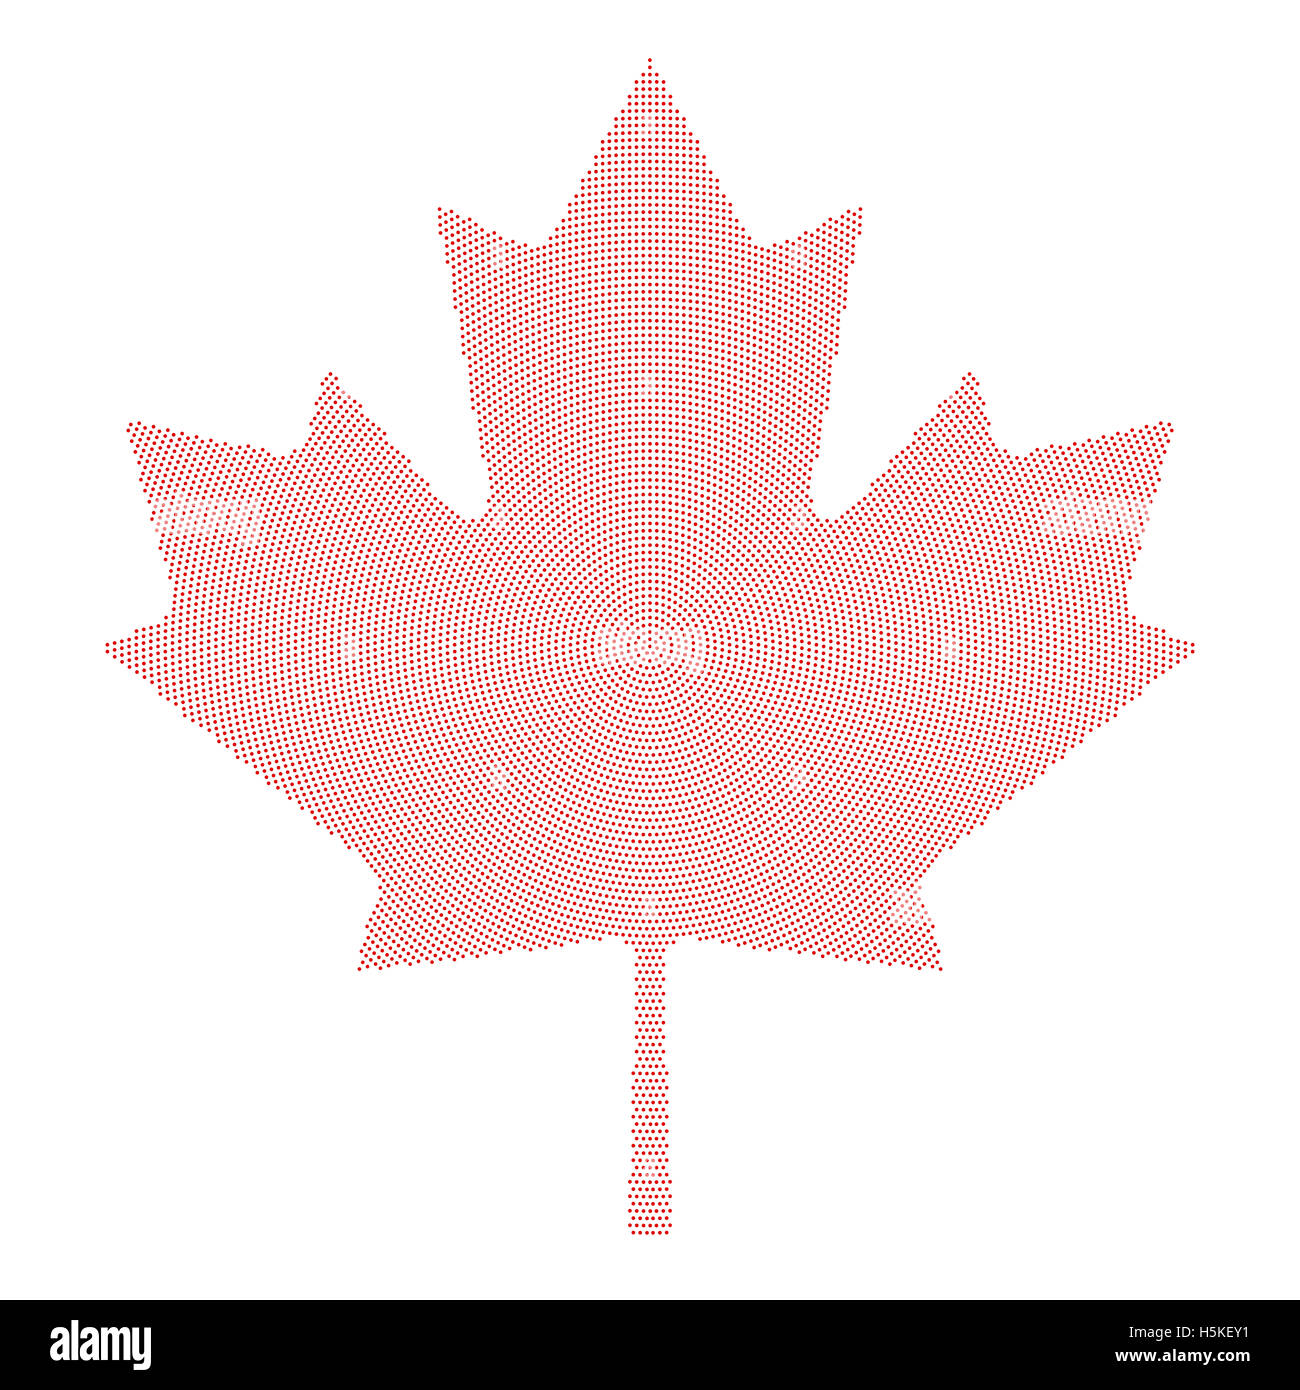 Symbole de la feuille d'érable radial rouge motif de points. Feuille de caractéristiques l'érable et symbole national du Canada. Formée par des points. Banque D'Images